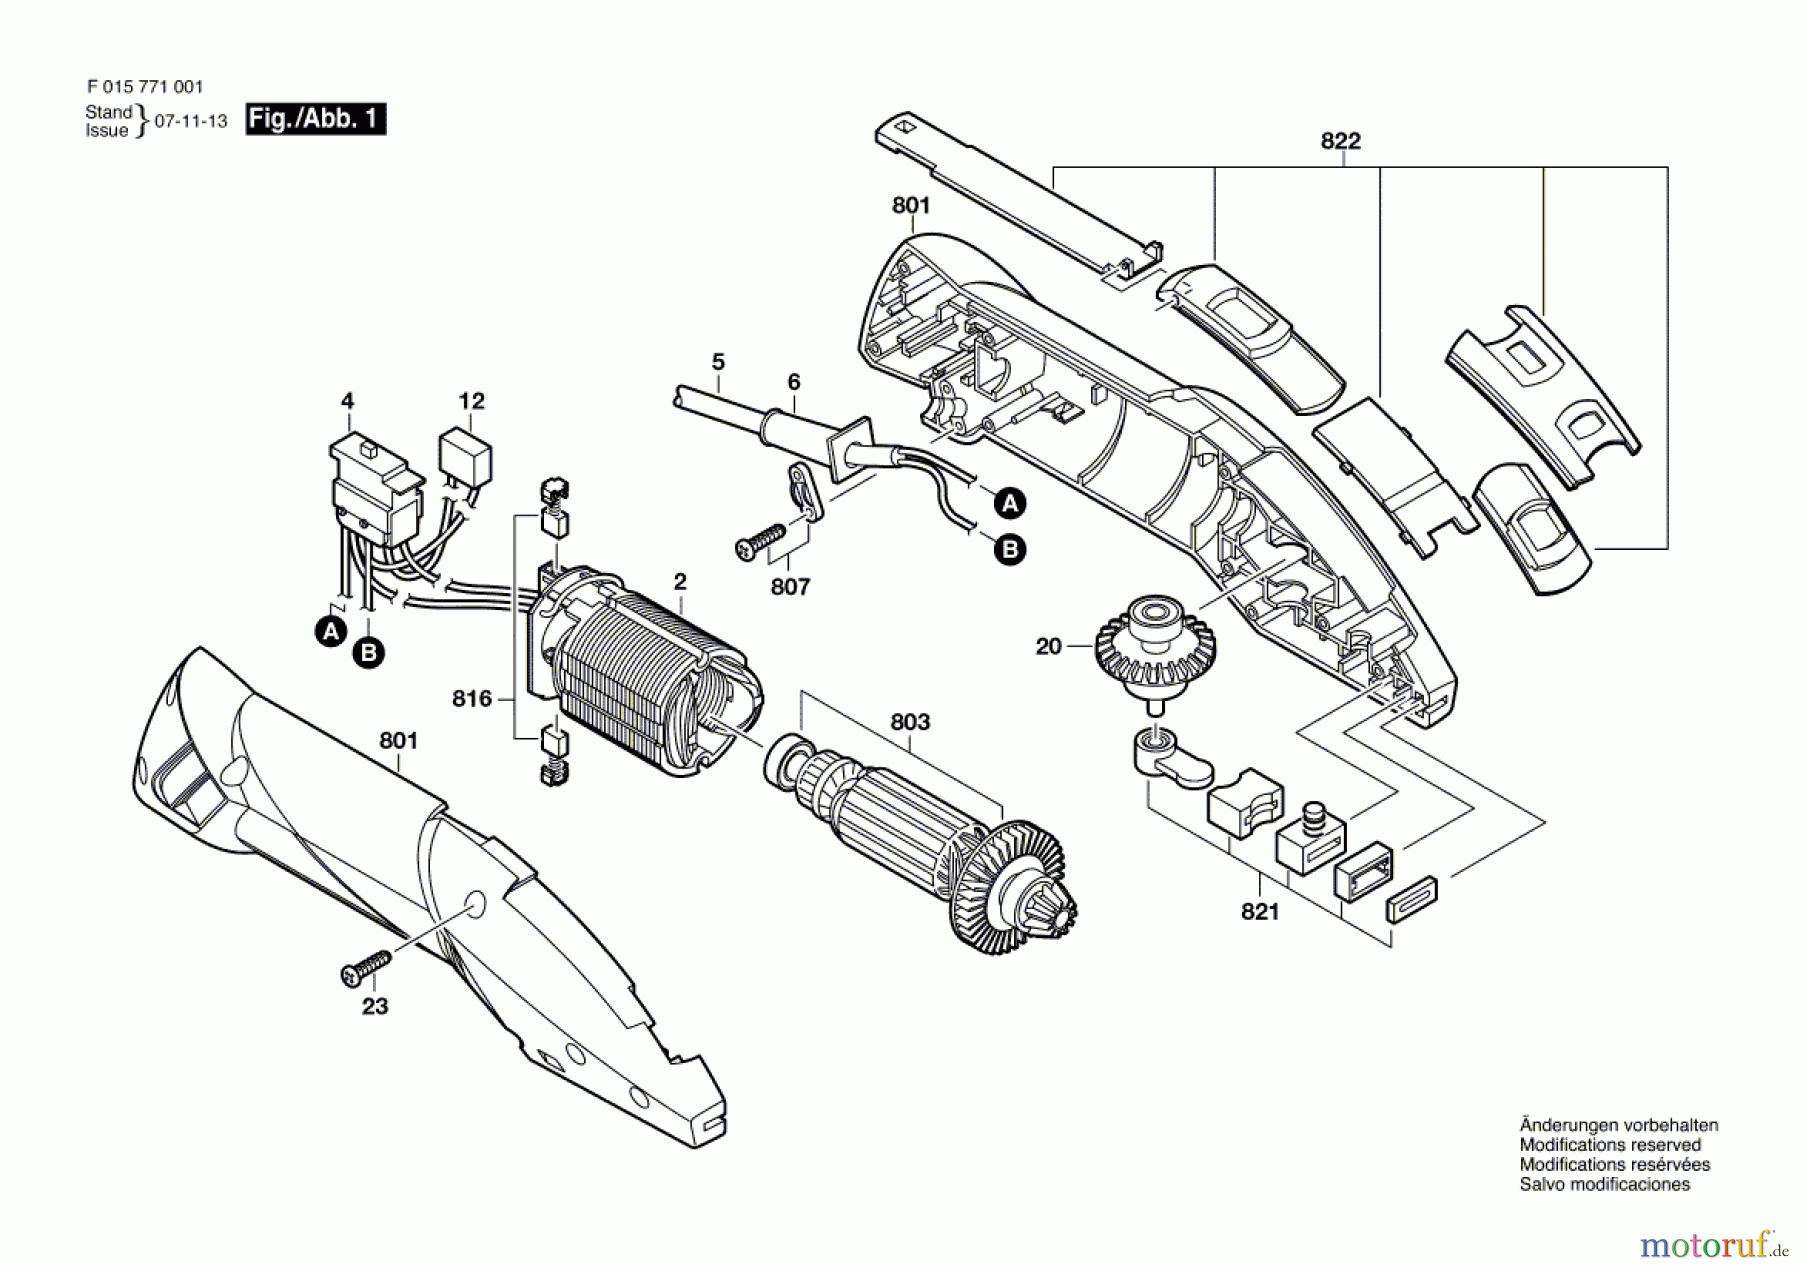  Bosch Werkzeug Abstreifer 7720 Seite 1